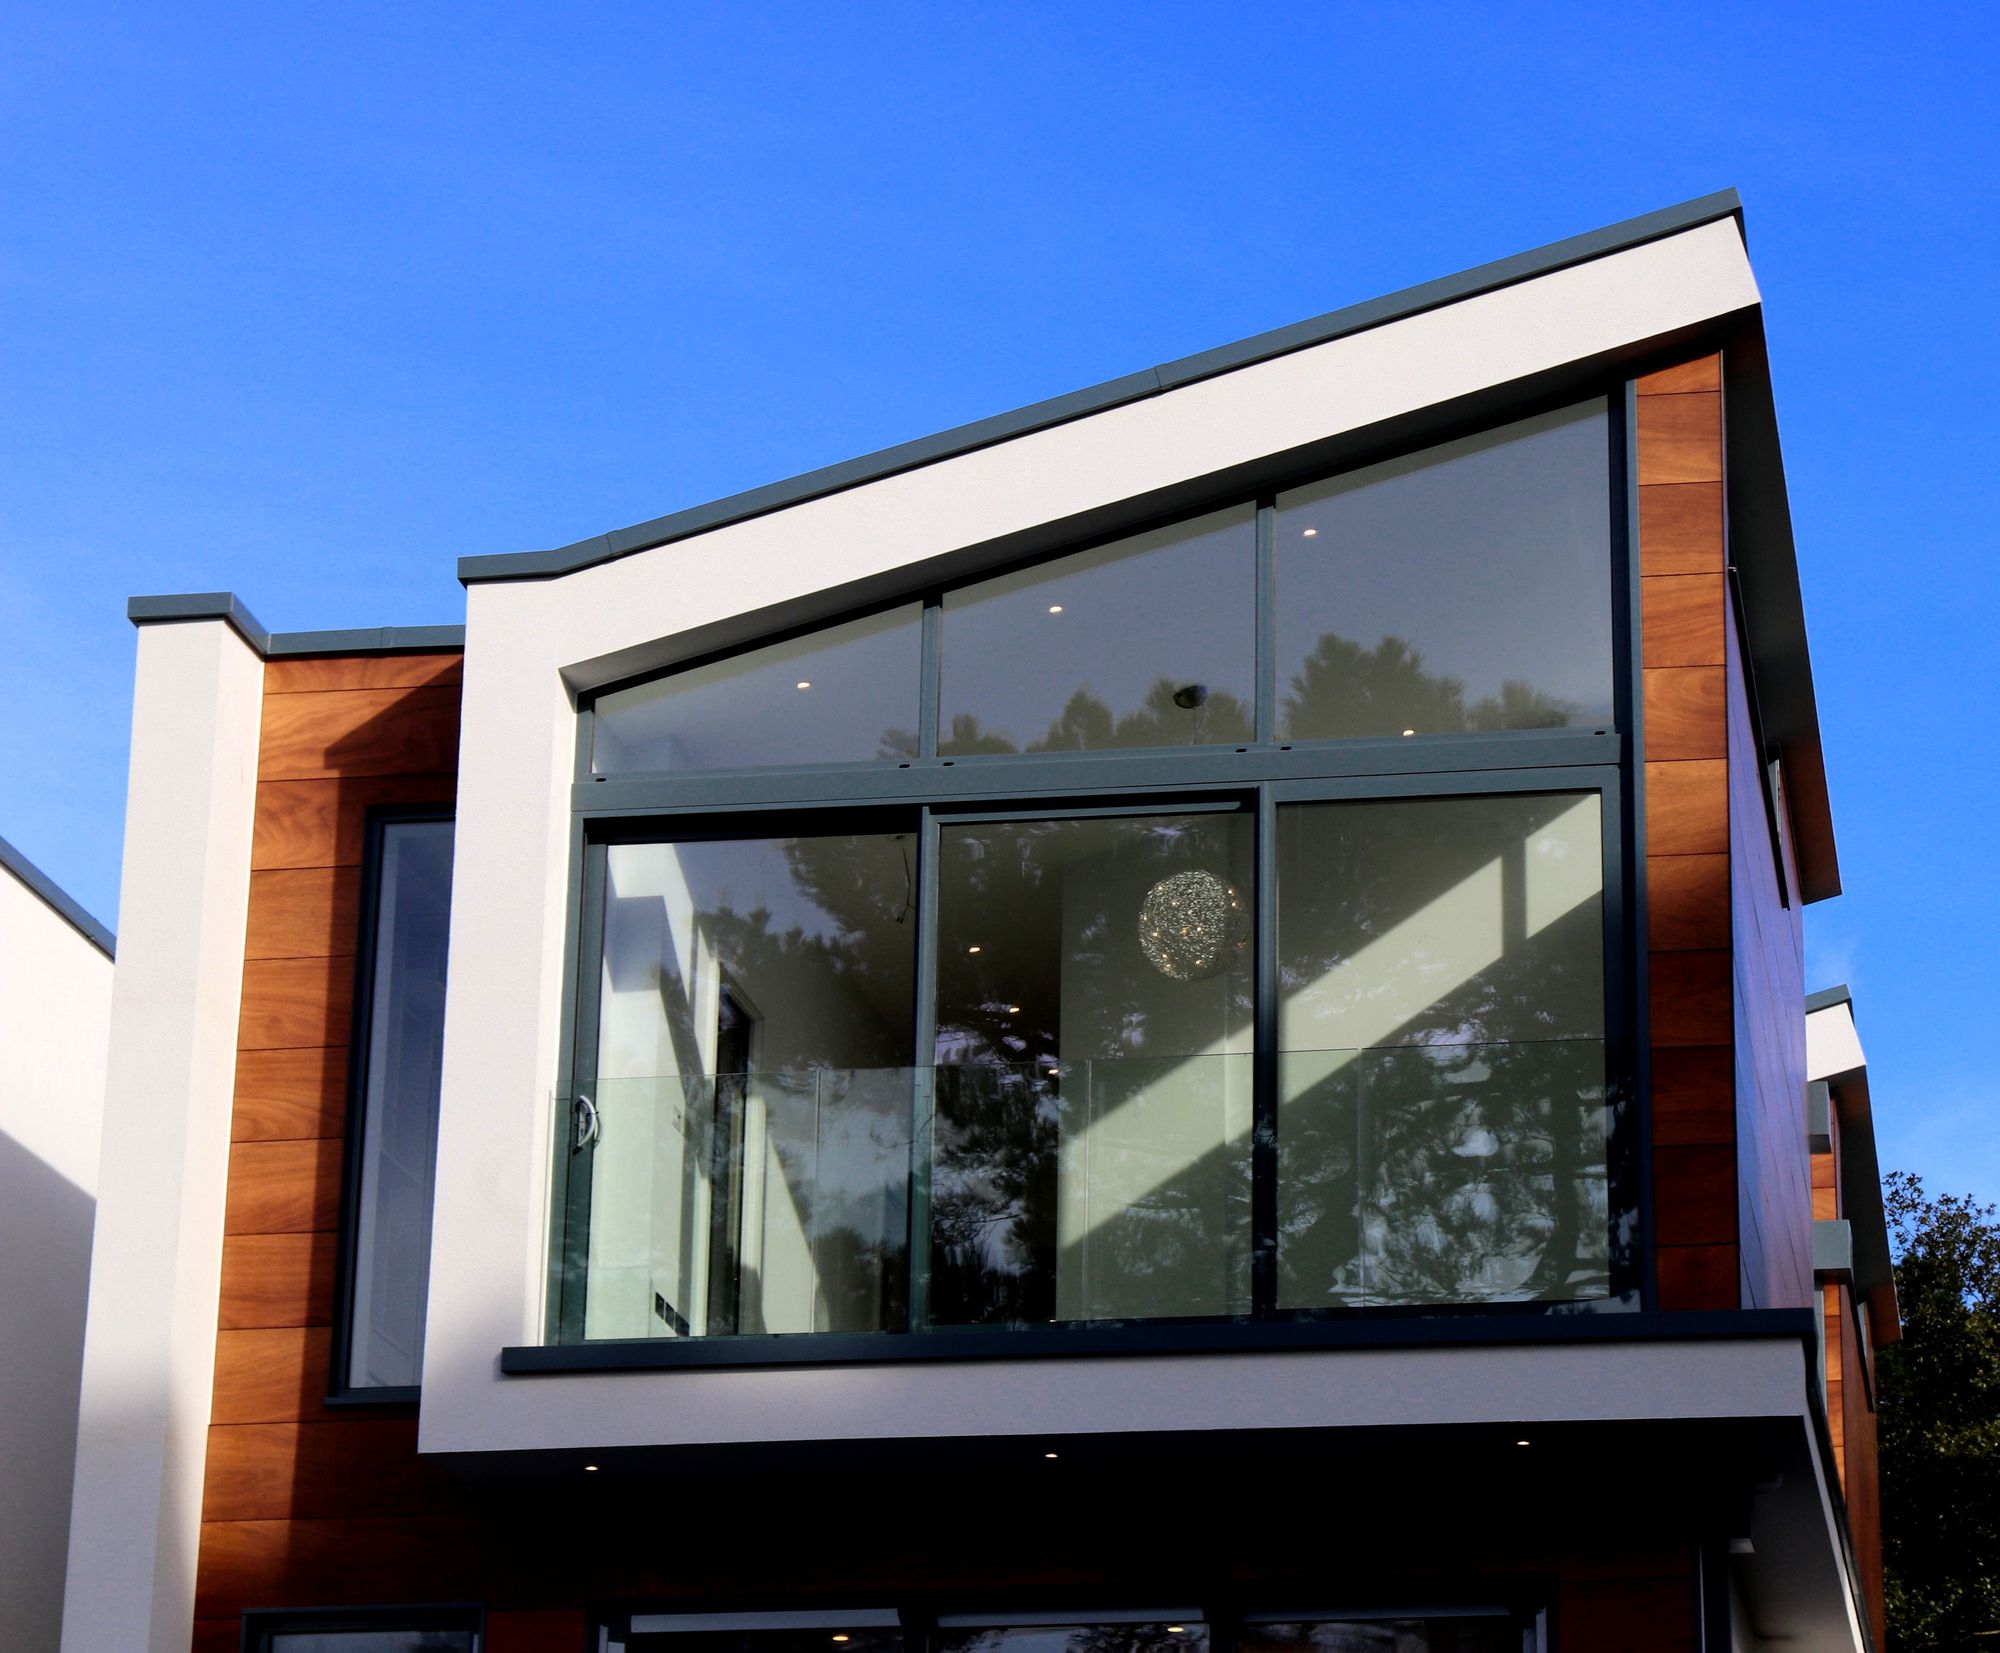 Uma pequena casa com janelas de vidro e telhado embutido, dando um toque contemporâneo à estrutura